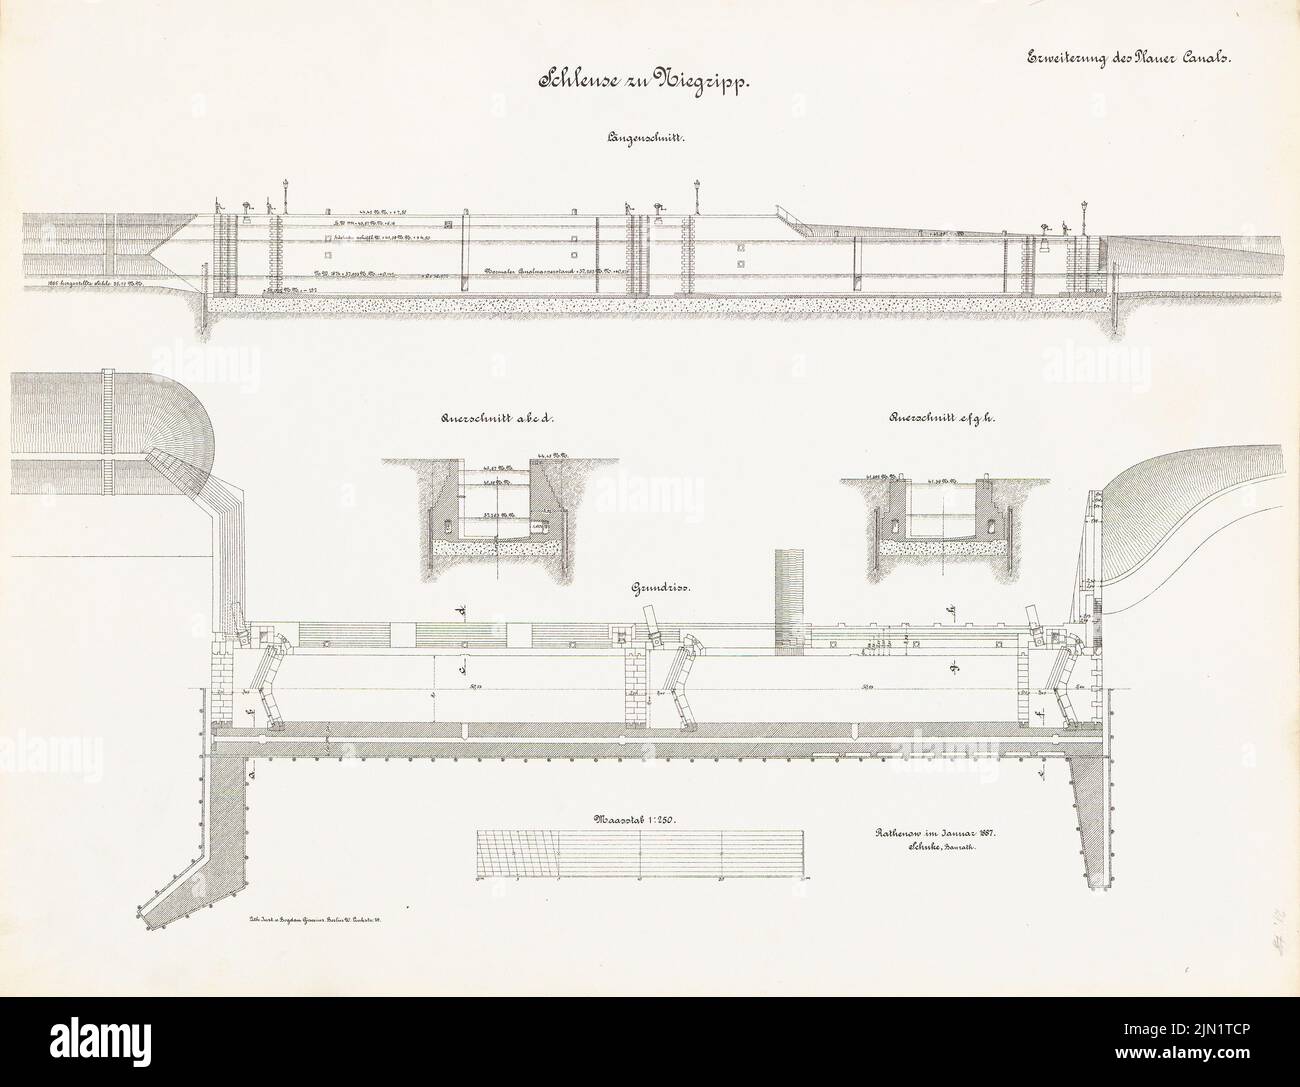 N.N., Expansión del Canal Plauer (01,1887): Schleuse, Niegripp: Plano y cortes 1: 250. Litografía sobre papel, 48,6 x 63,4 cm (incluidos los bordes de escaneado) N.N. : Erweiterung des Plauer Kanals. Schleuse, Niegripp Foto de stock